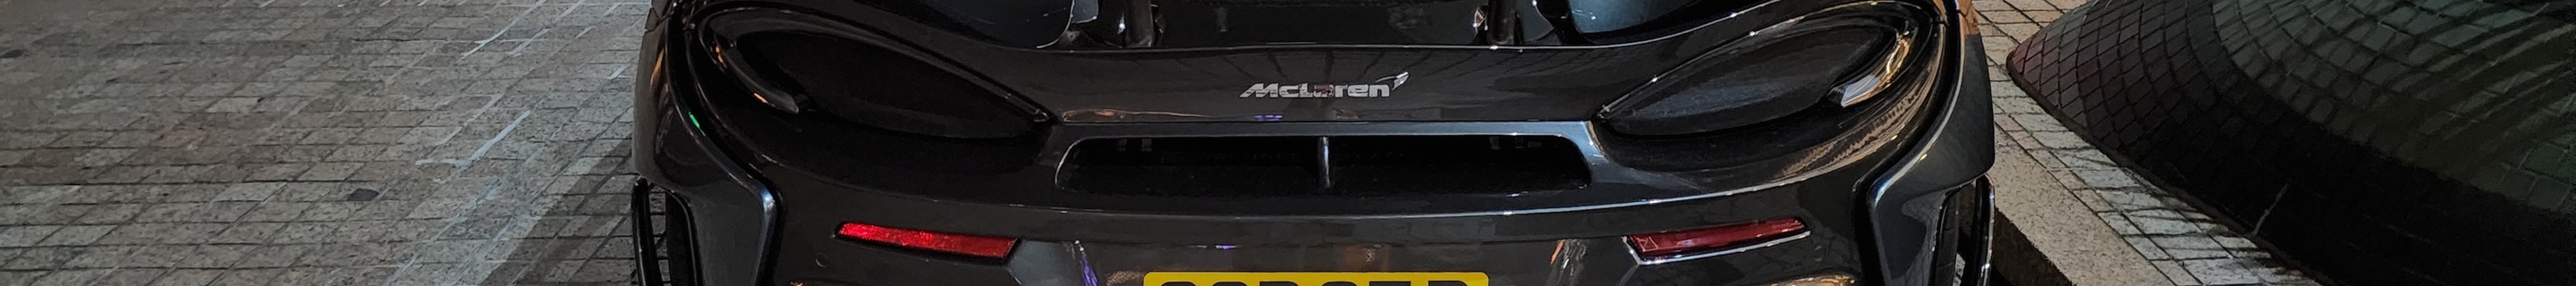 McLaren 600LT